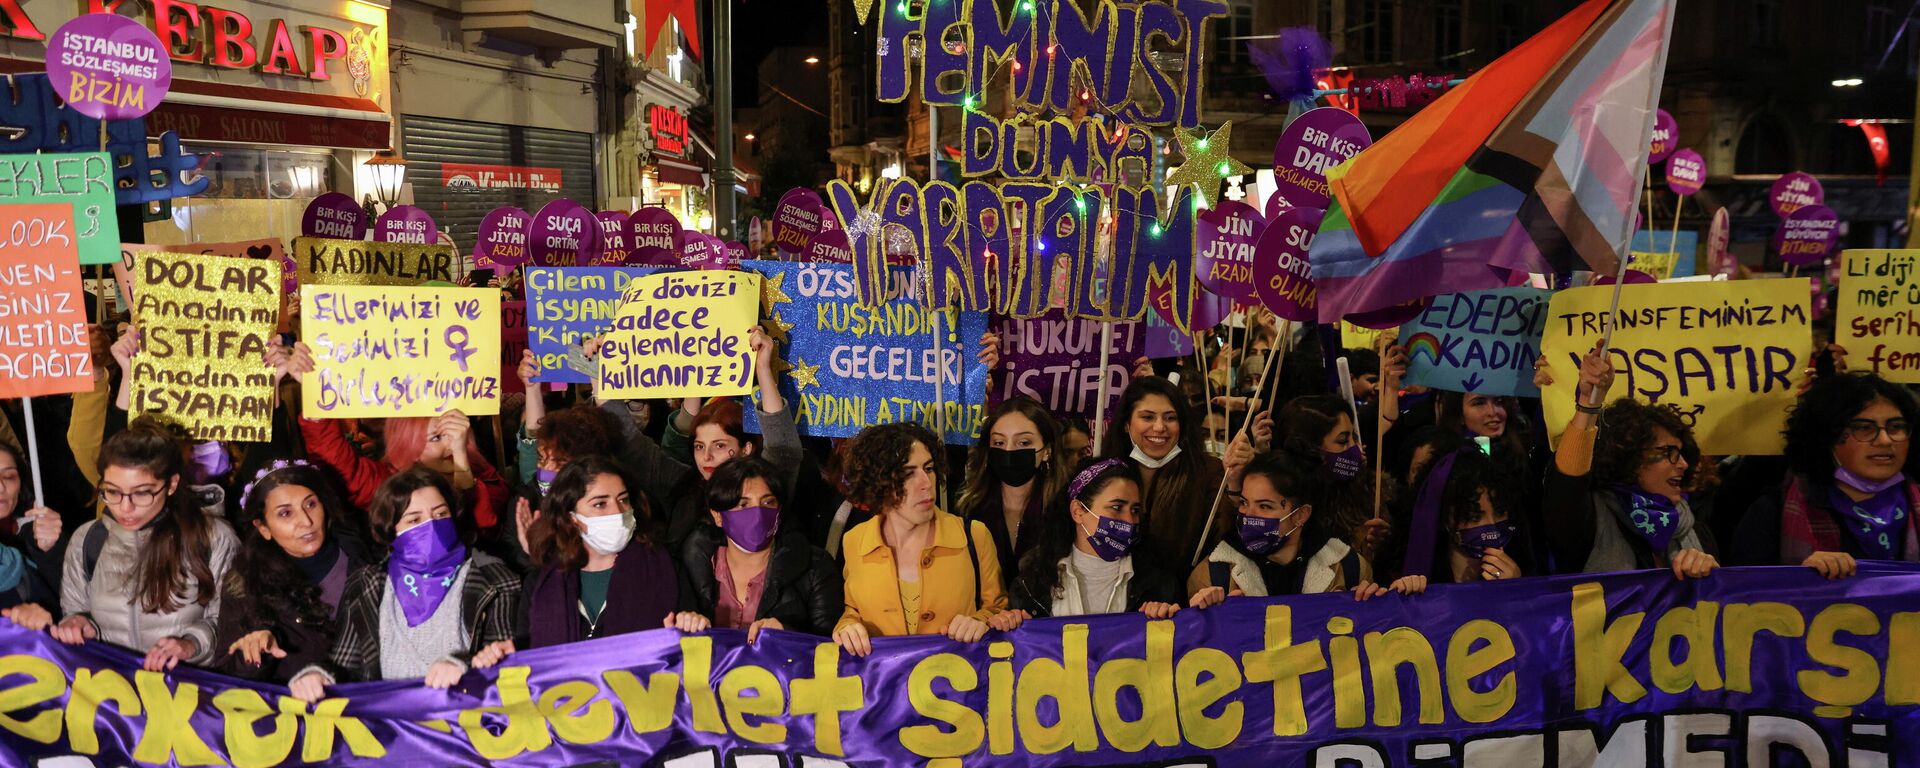 Activistas marchan por los derechos de las mujeres en Turquía - Sputnik Mundo, 1920, 27.11.2021